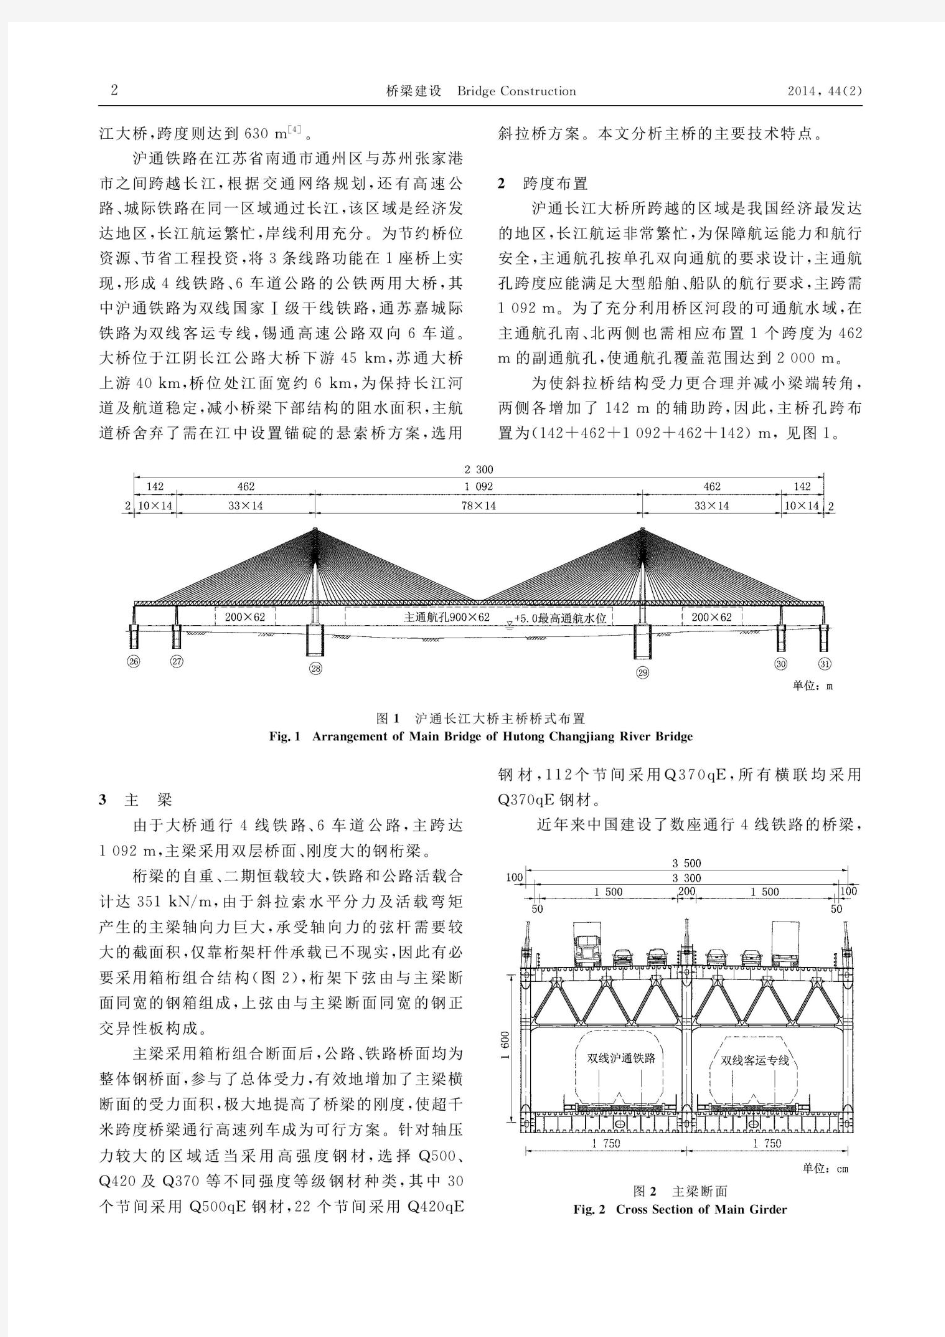 沪通长江大桥主桥技术特点